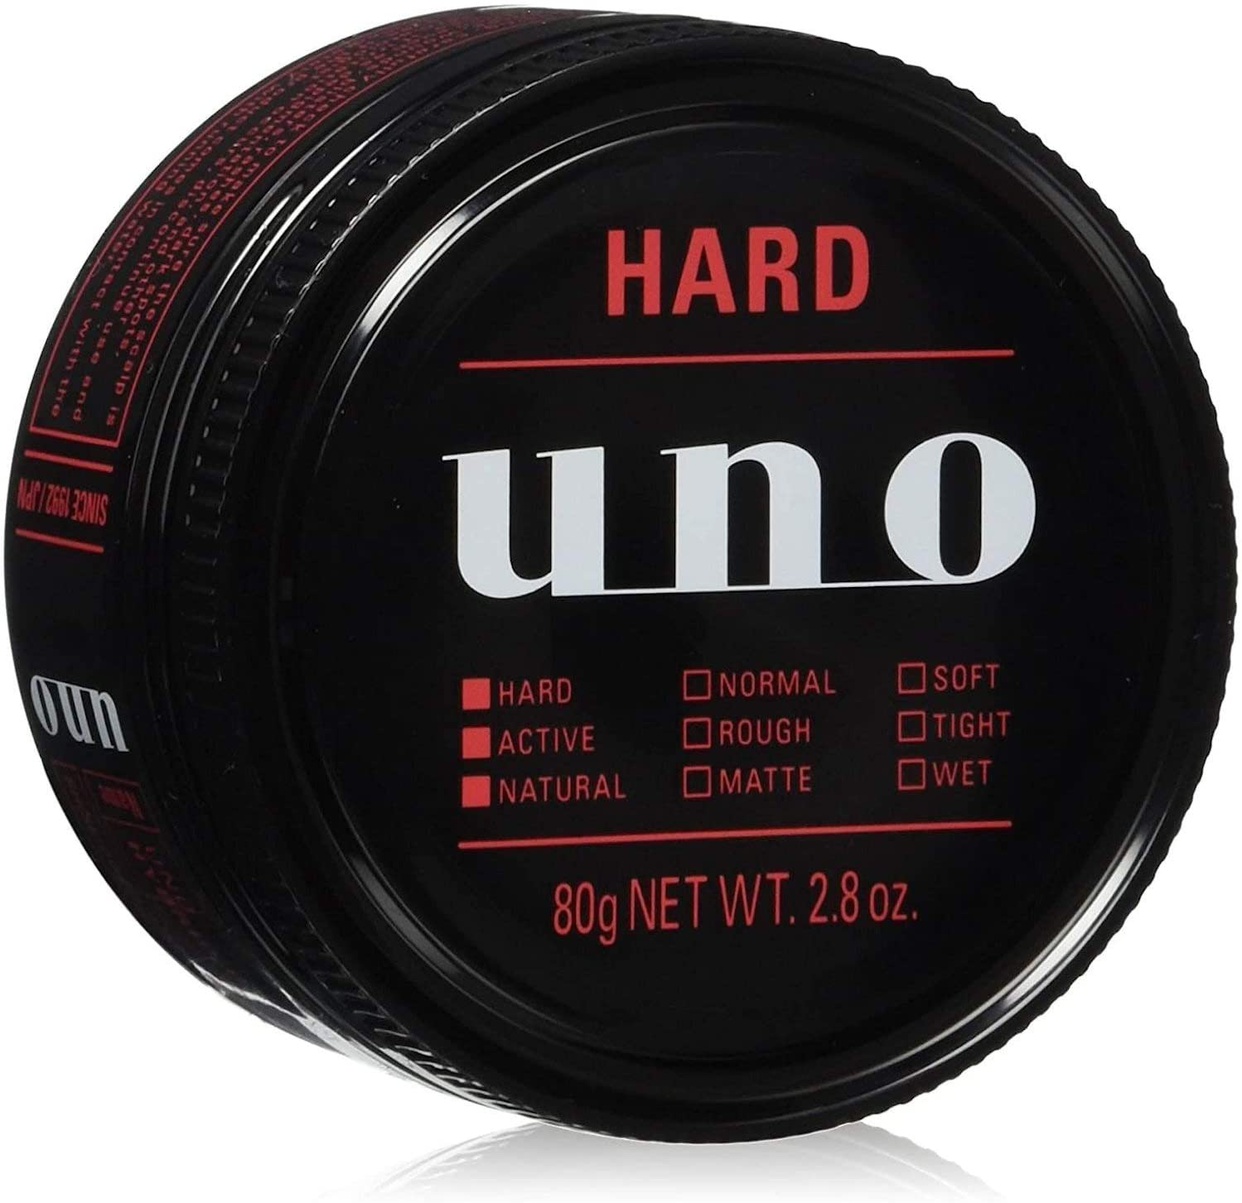 uno(ウーノ) ハイブリッドハードの商品画像サムネ1 